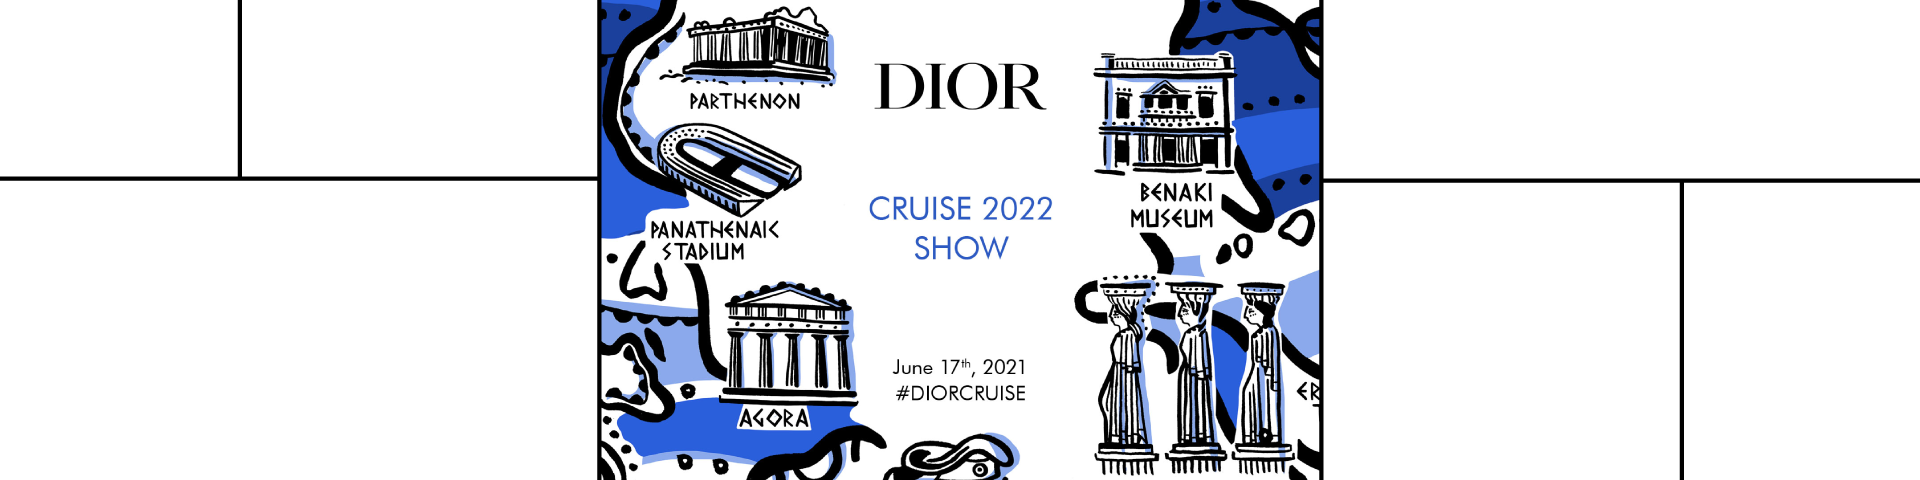 εικαστικό του Dior που απεικονίζει διάφορα τοπόσημα της Ελλάδας